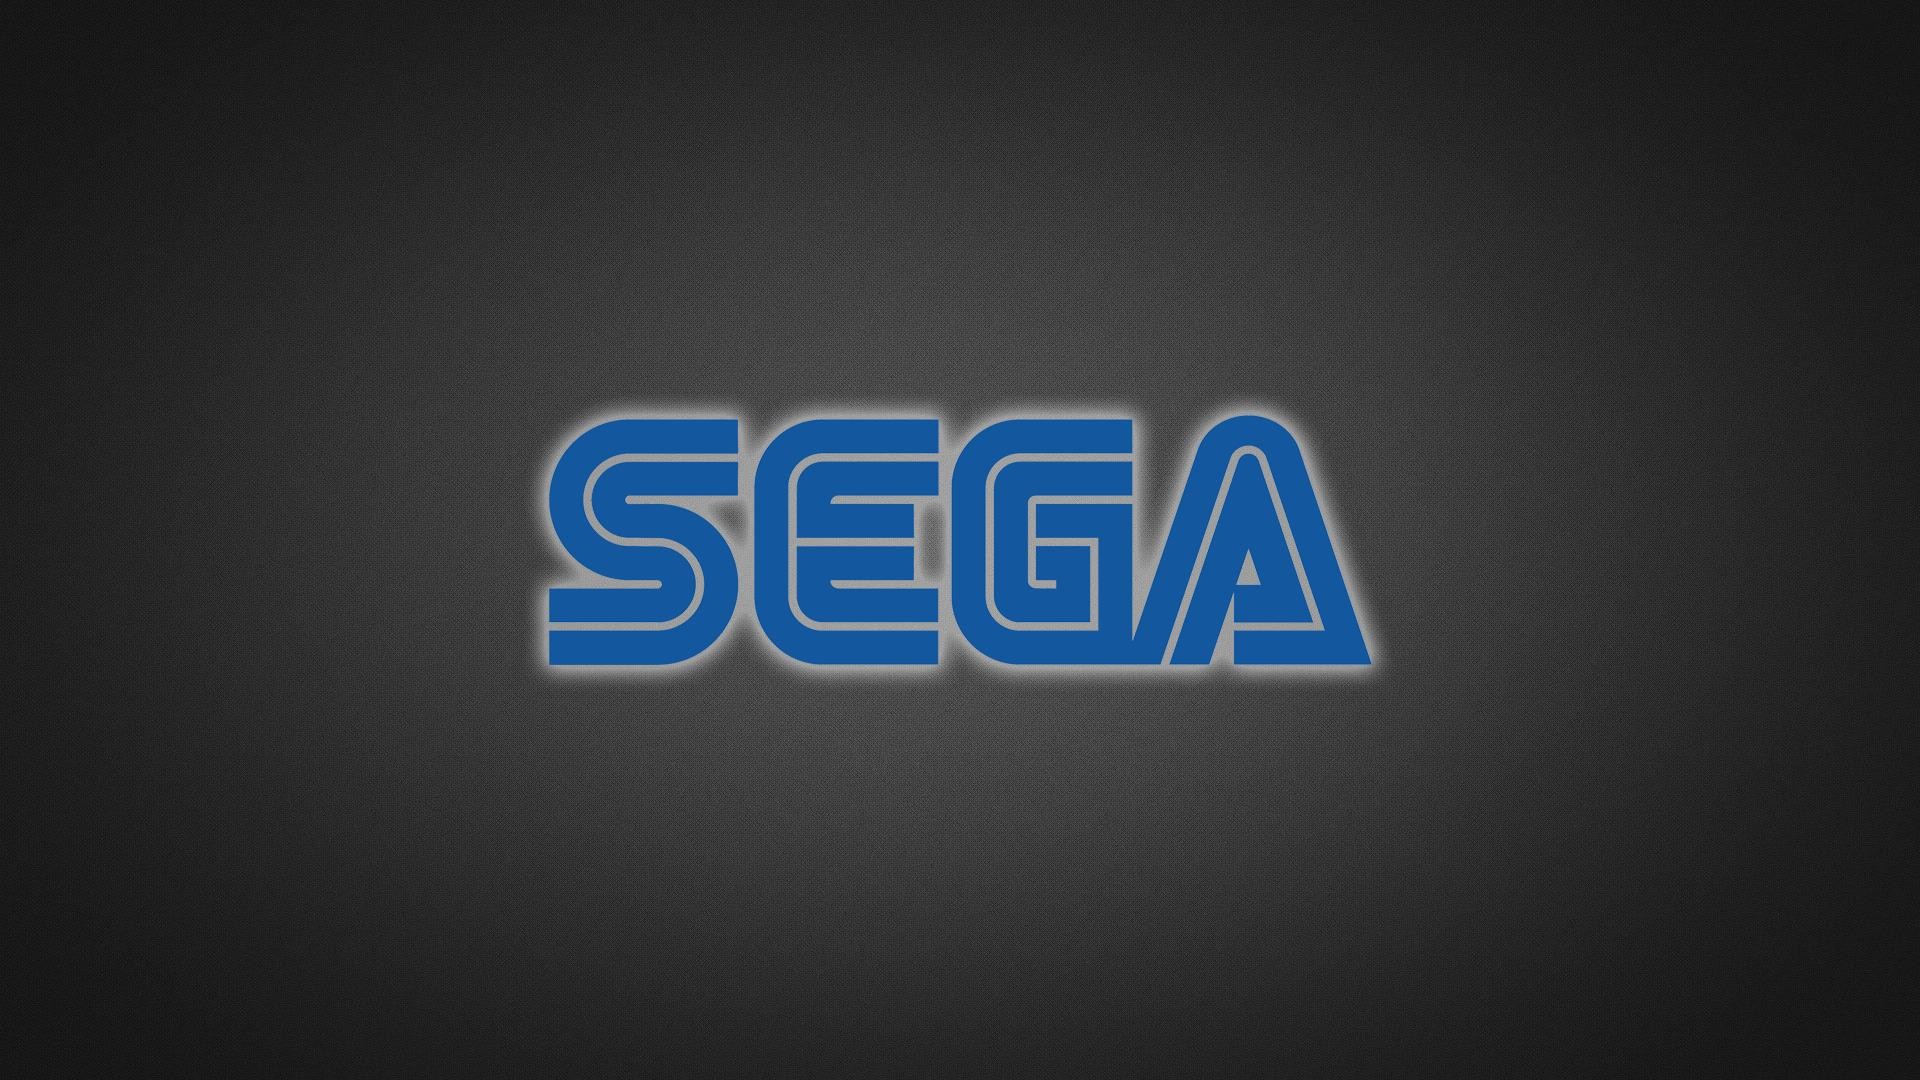 Fonds d'Ã©cran Sega : tous les wallpapers Sega